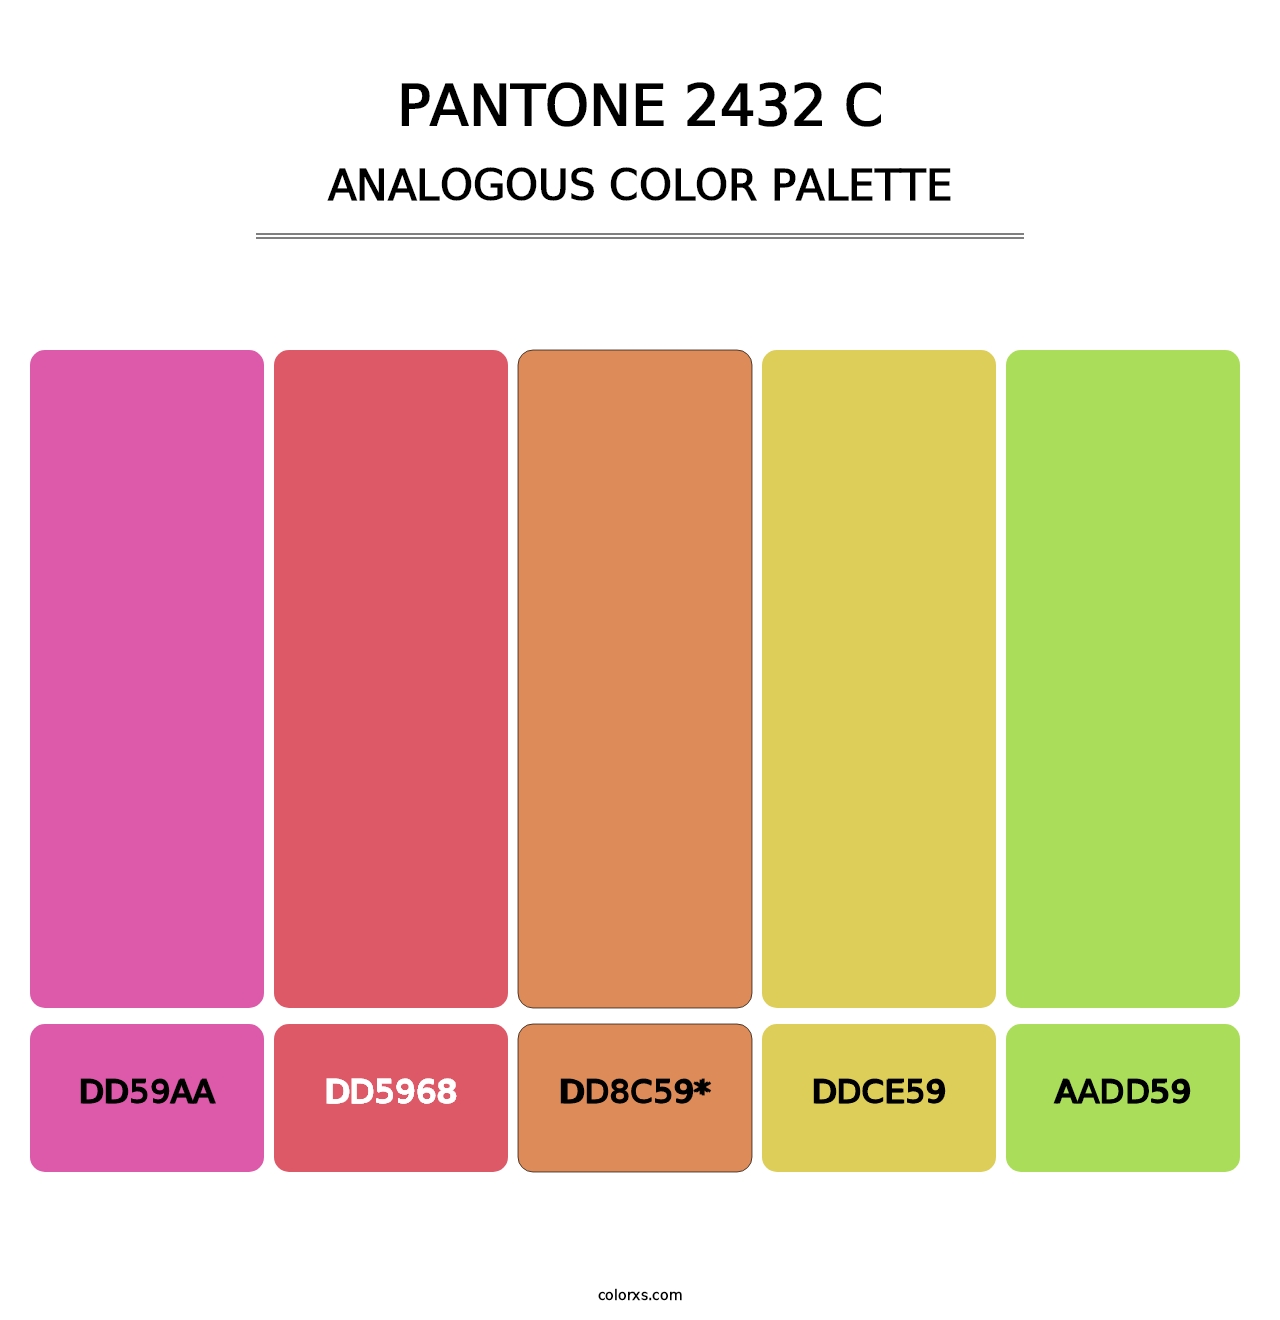 PANTONE 2432 C - Analogous Color Palette